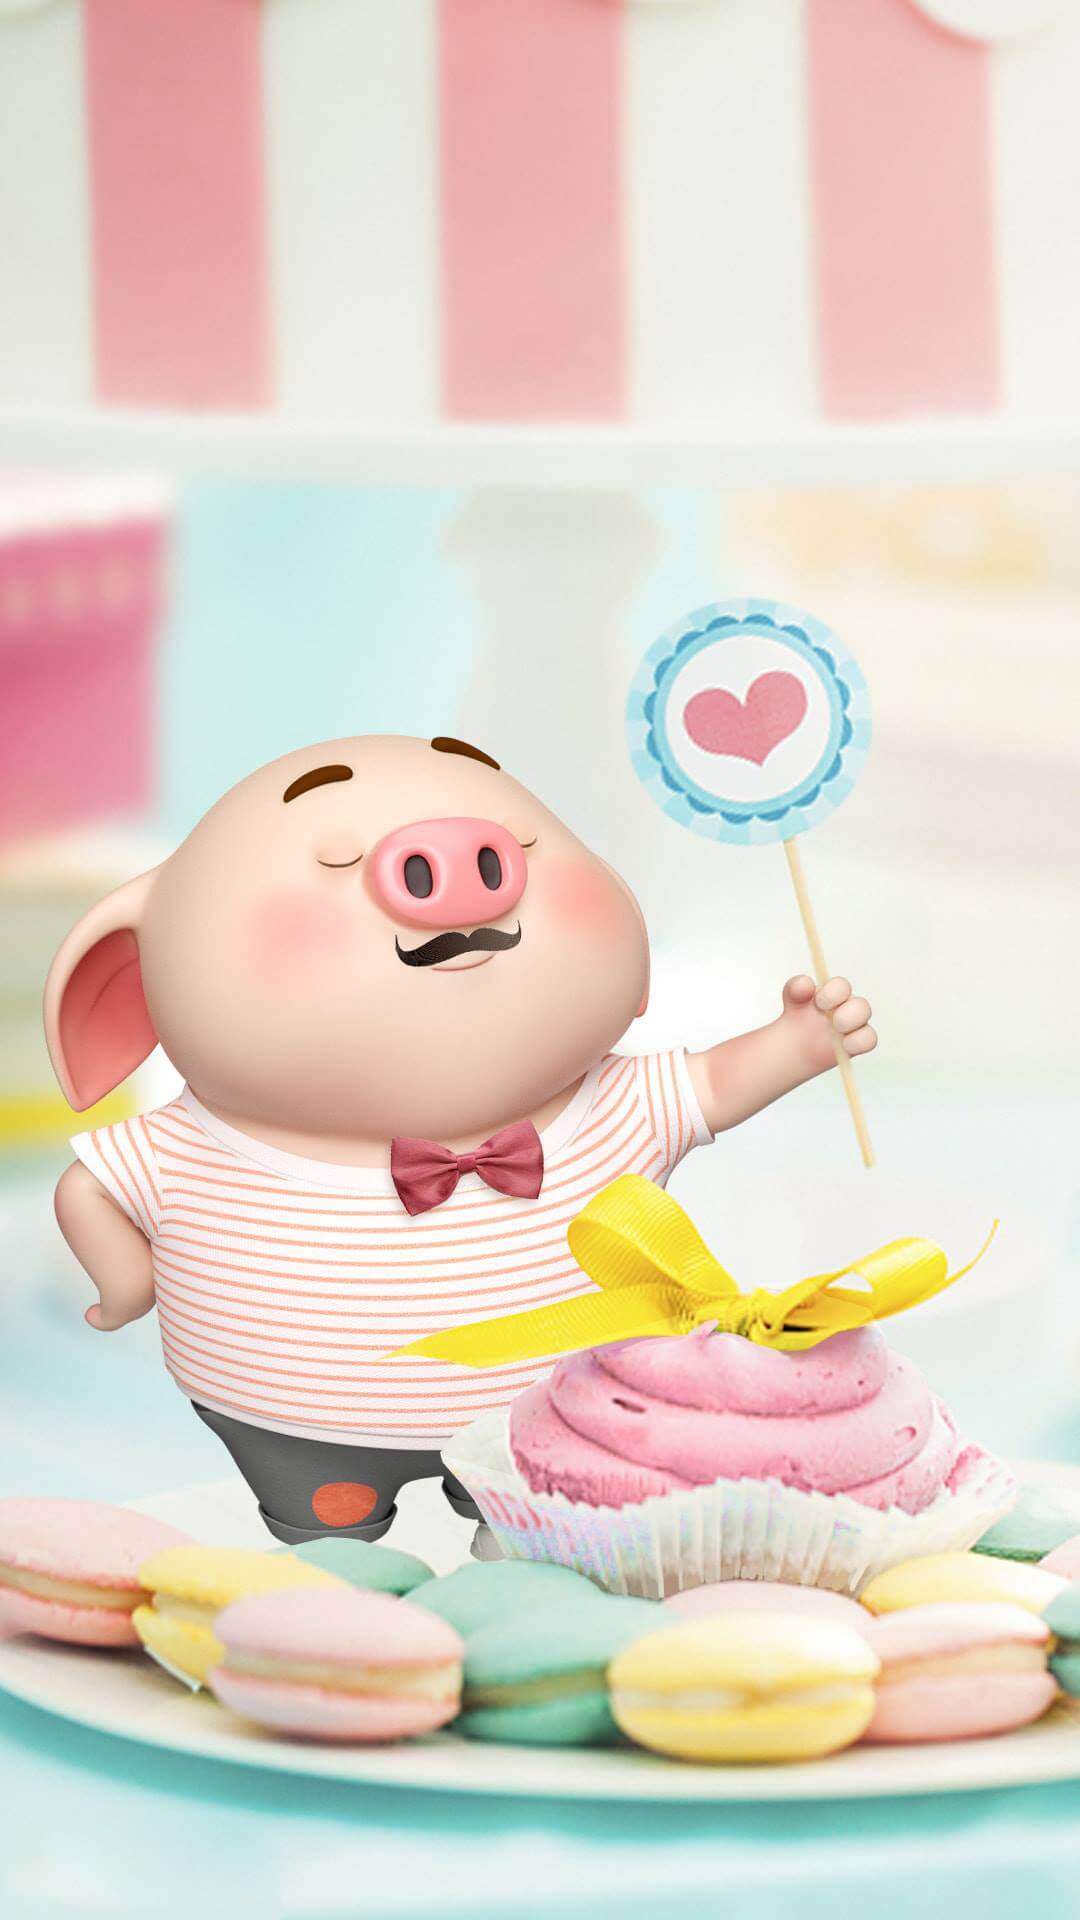 Smartphone/PC] Chia sẻ bộ ảnh nền “Heo con Cute” đón Tết Nguyên Đán – Kỷ  Hợi 2019 | Hình nền disney, Hình vẽ dễ thương, Lợn con